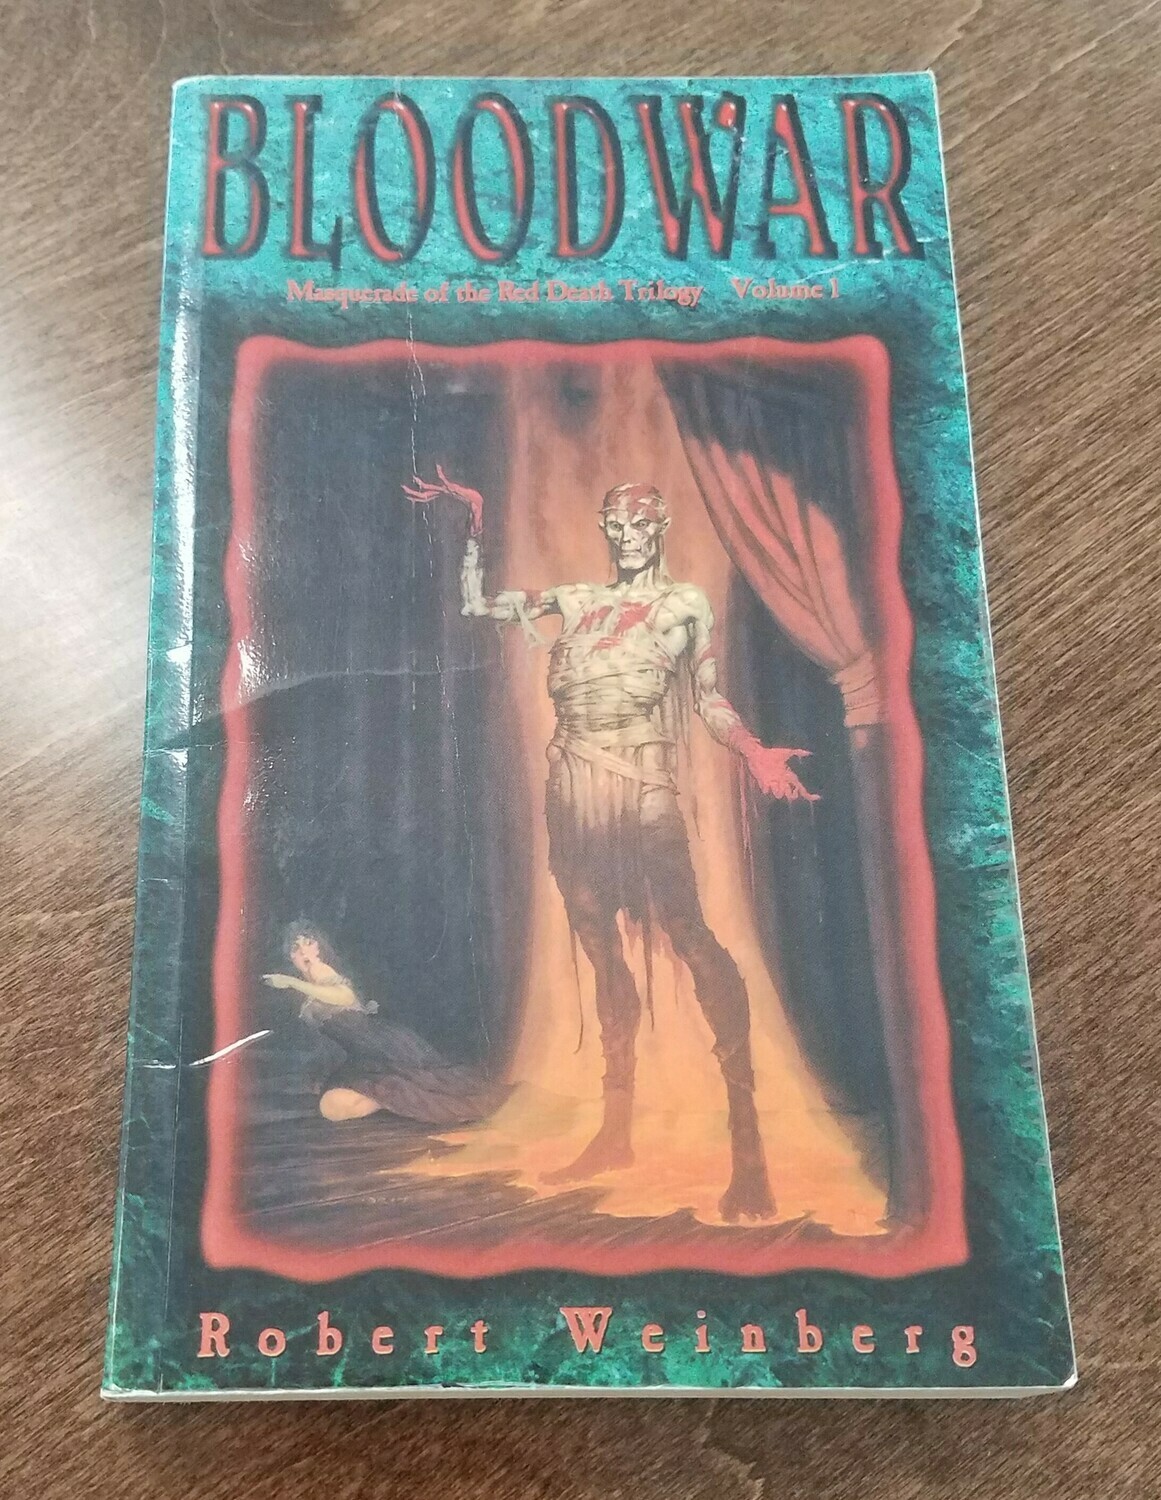 Bloodwar by Robert Weinberg